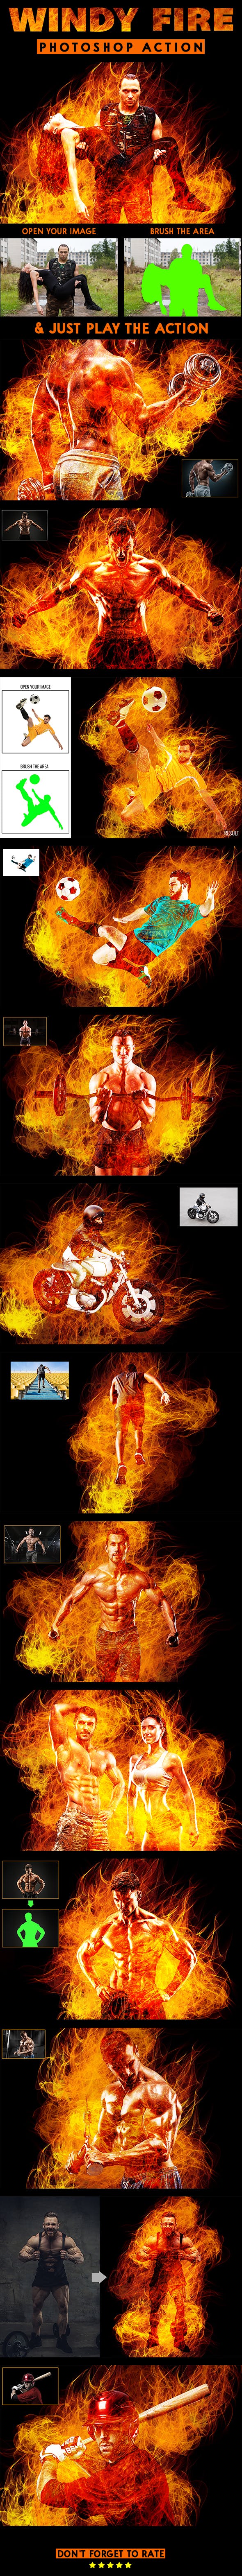 一款非常震撼逼真的火焰特效PS动作下载 Windy Fire Photoshop Action插图